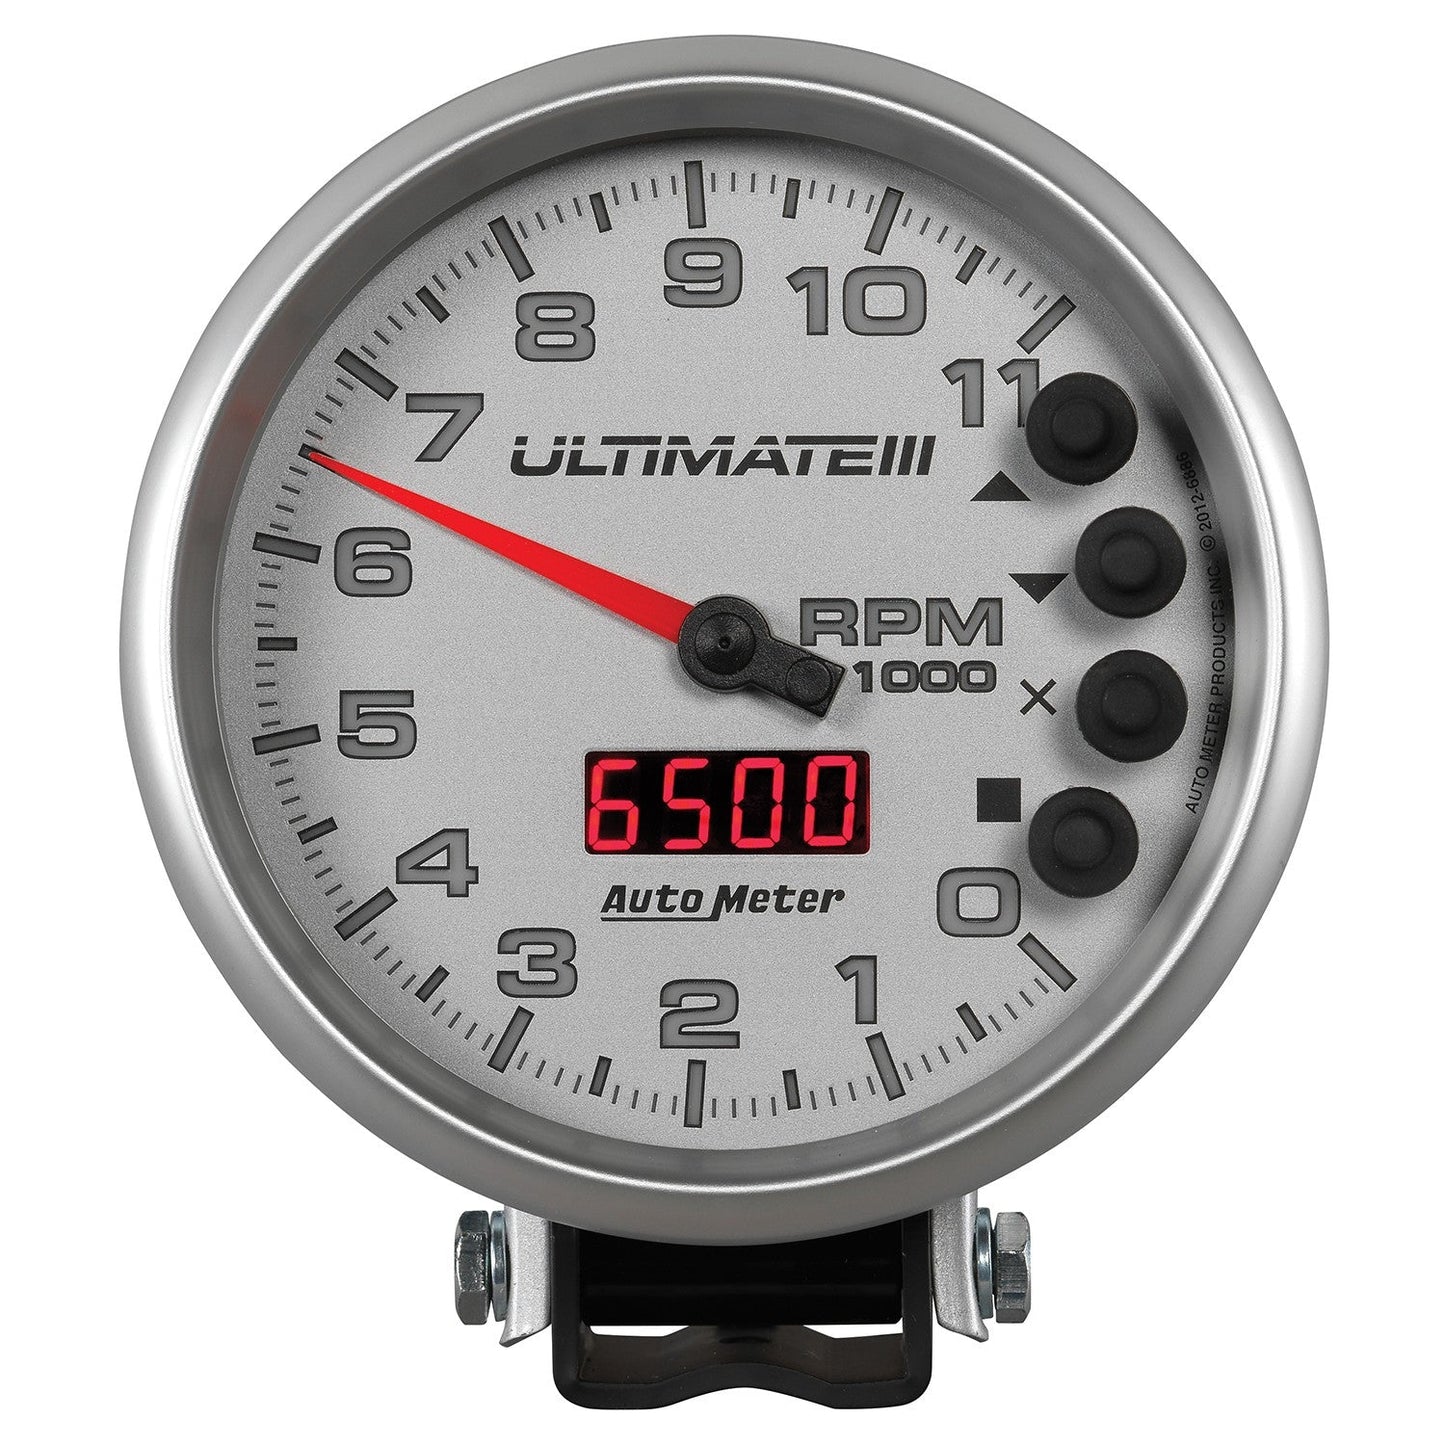 AutoMeter - TACÔMETRO DE 5", 0-11.000 RPM, PEDESTAL, REPRODUÇÃO ULTIMATE III, PRATA (6886)